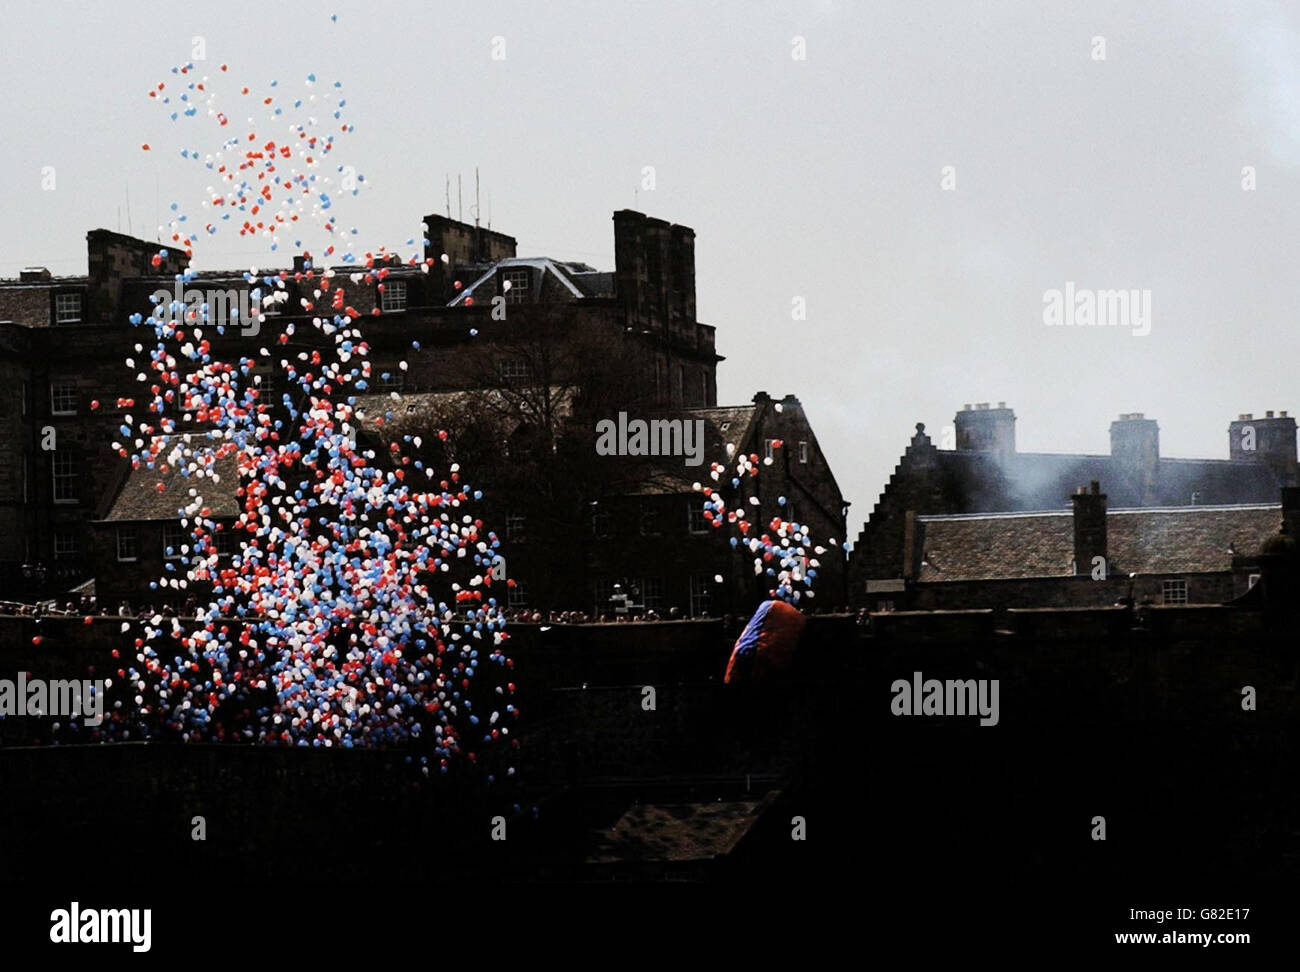 Des milliers de ballons rouges, blancs et bleus remplissent le ciel au-dessus du château d'Édimbourg à la mémoire de ceux qui ont perdu la vie pendant la Seconde Guerre mondiale.Cet hommage poignant a coïncidé avec le lancement d'un programme d'événements commémorant le 60e anniversaire de la fin du conflit. Banque D'Images